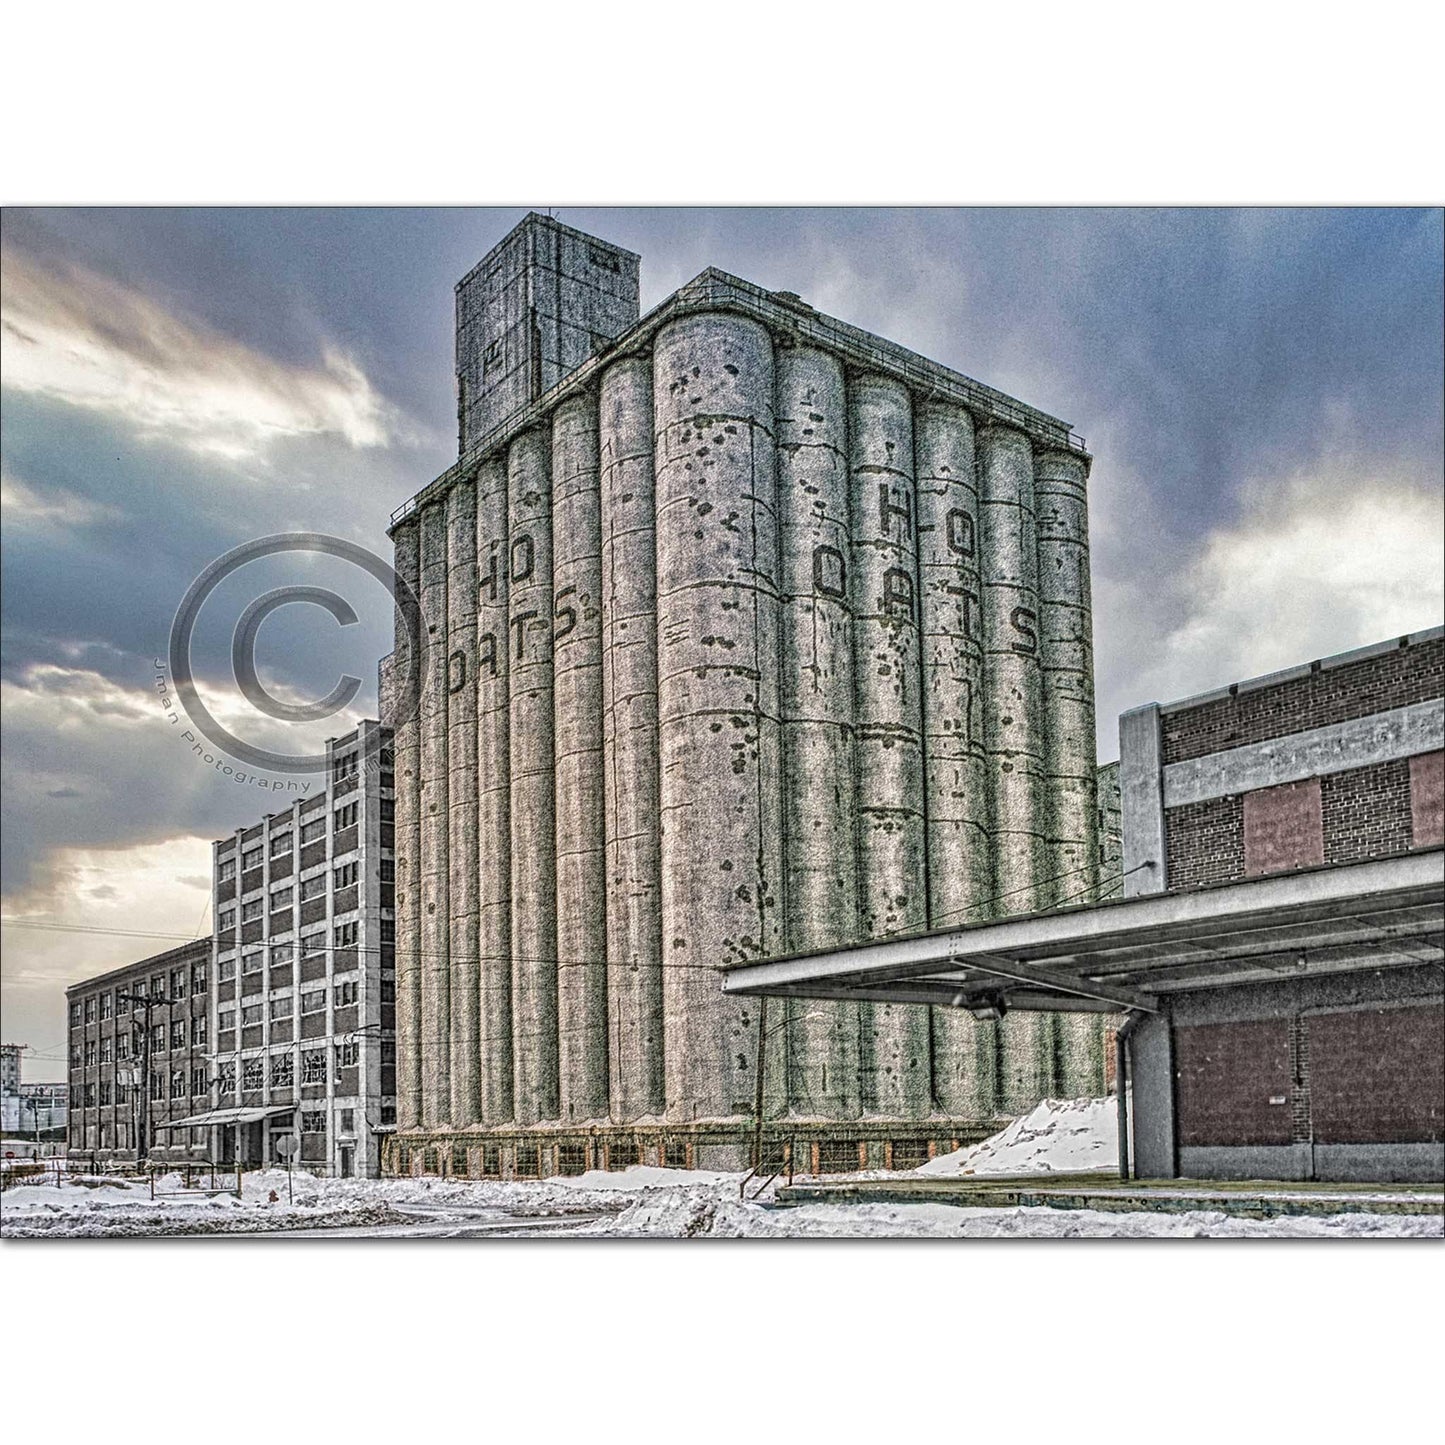 H-O Oats Grain Elevator in Buffalo NY Photograph WNY jmanphoto